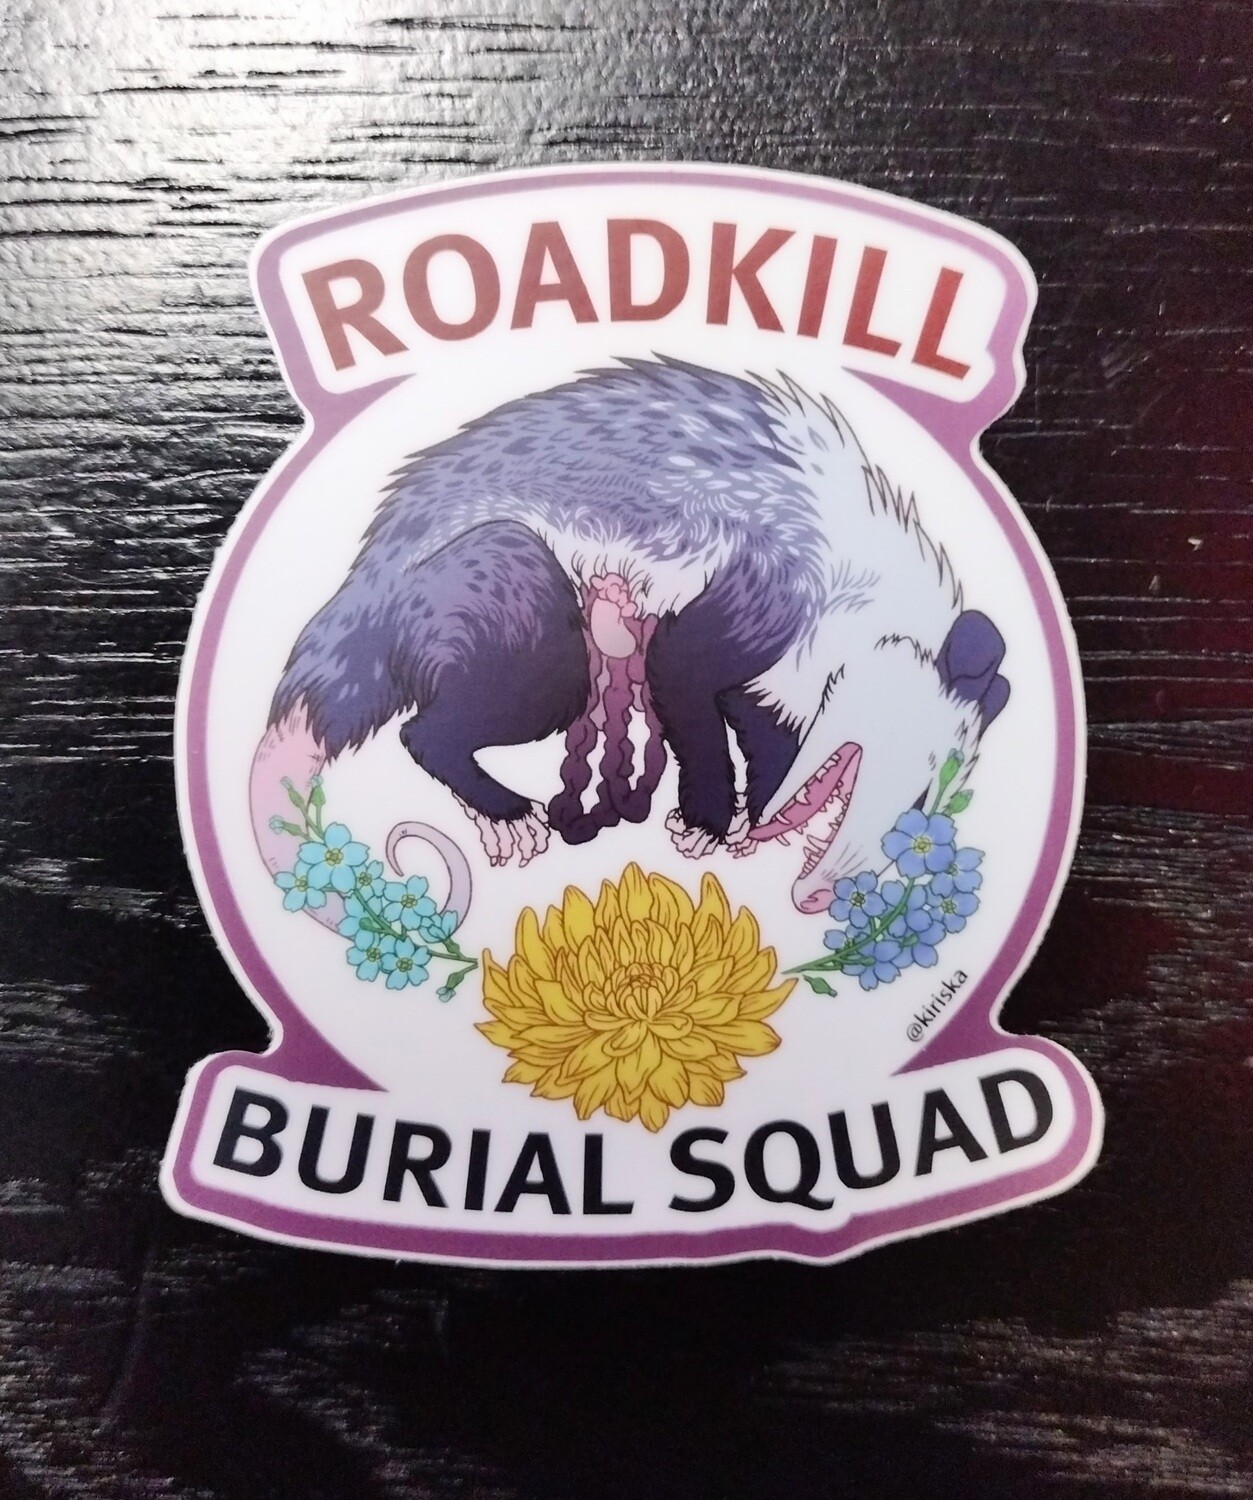 Roadkill Burial Squad - Sticker by Kiriska